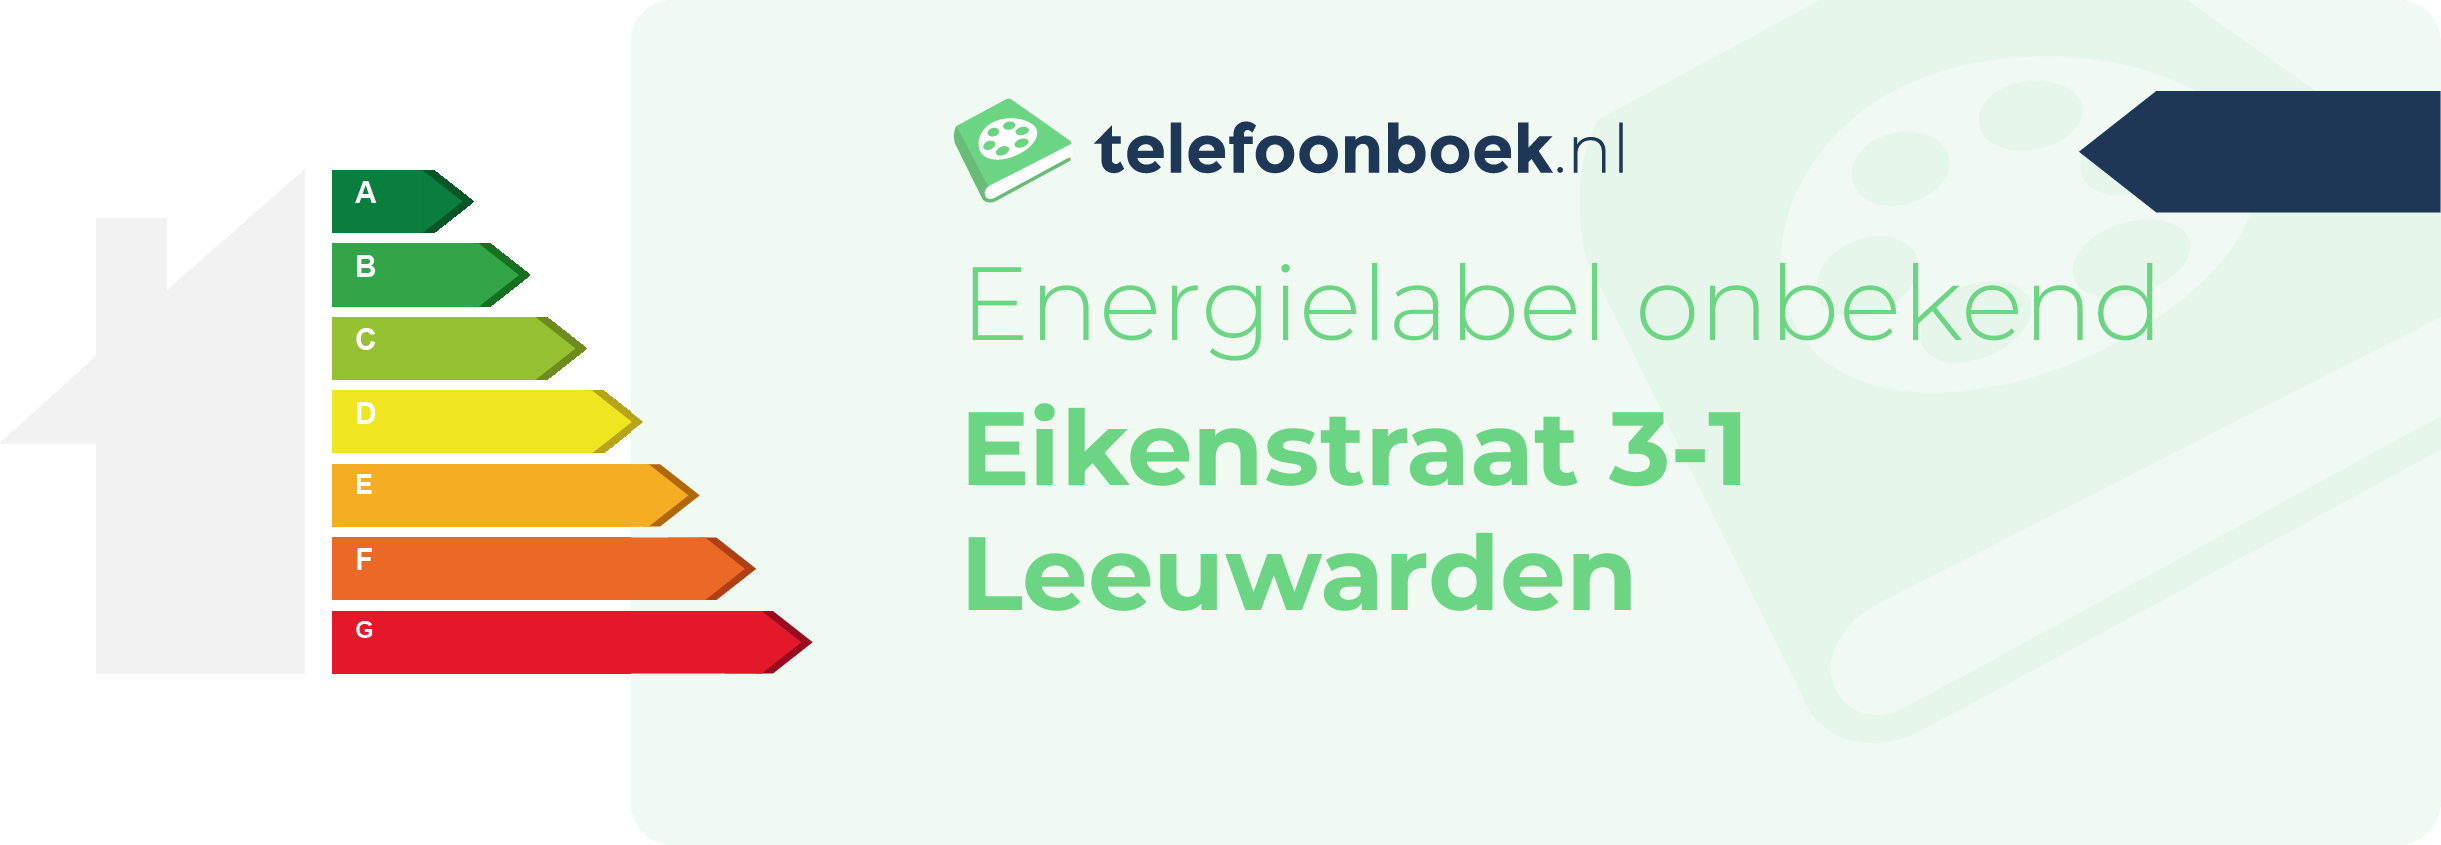 Energielabel Eikenstraat 3-1 Leeuwarden